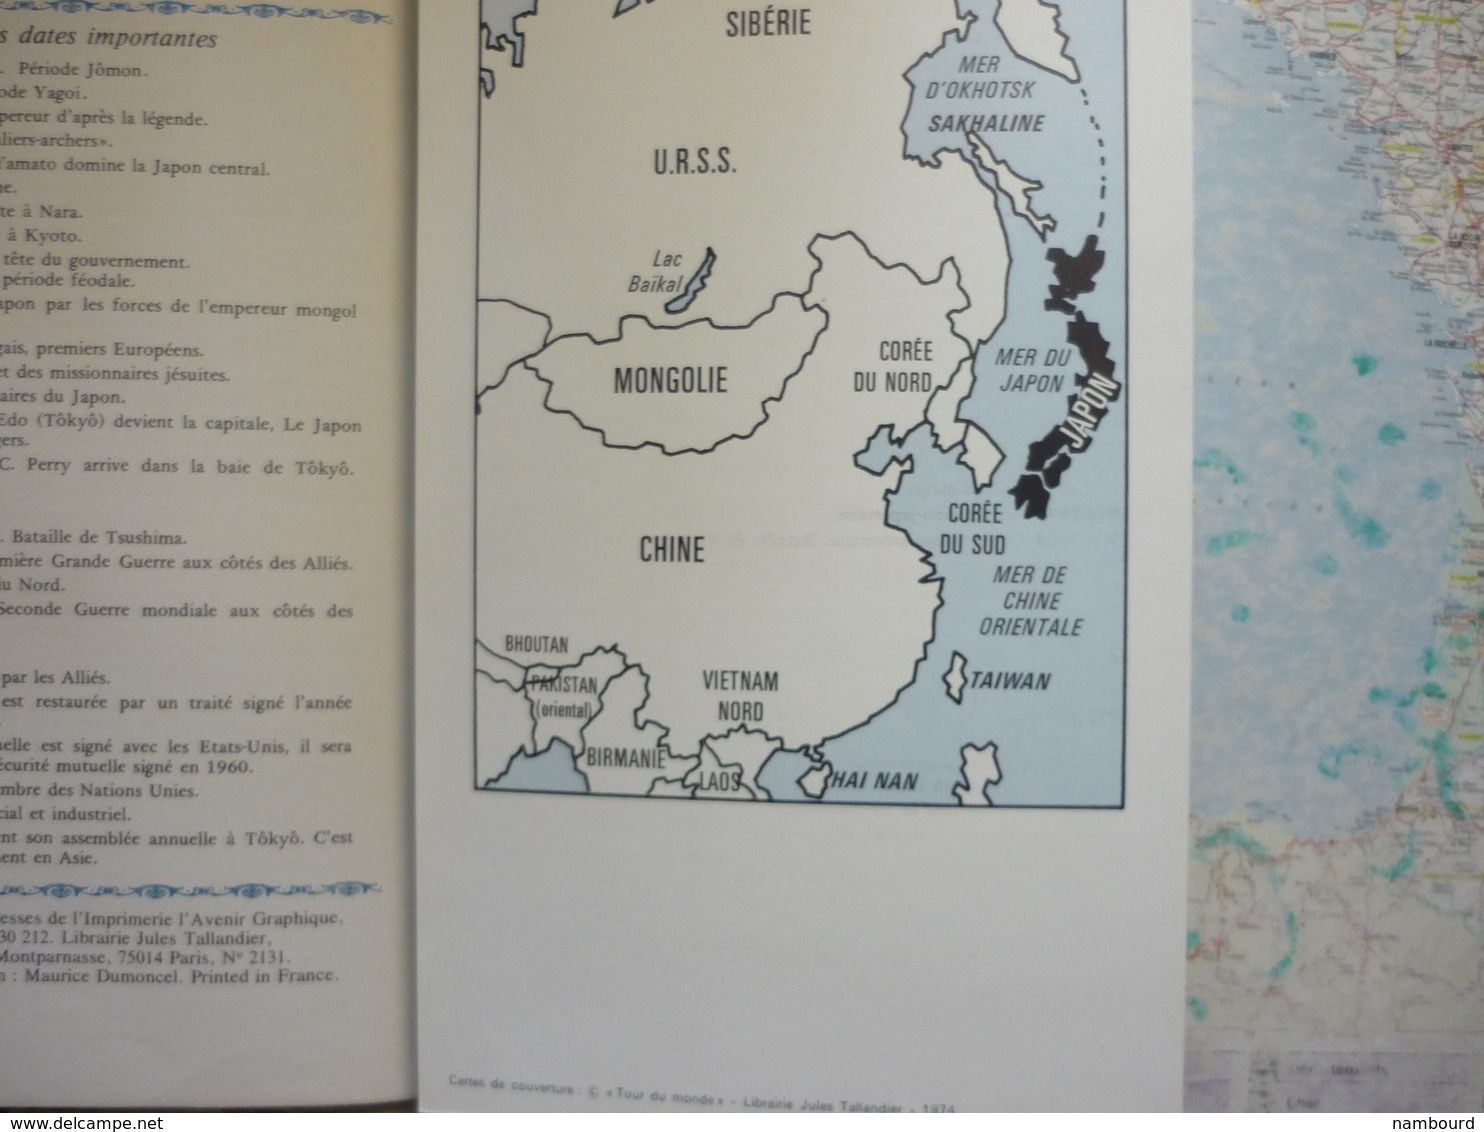 Tour du Monde Le Japon 1974